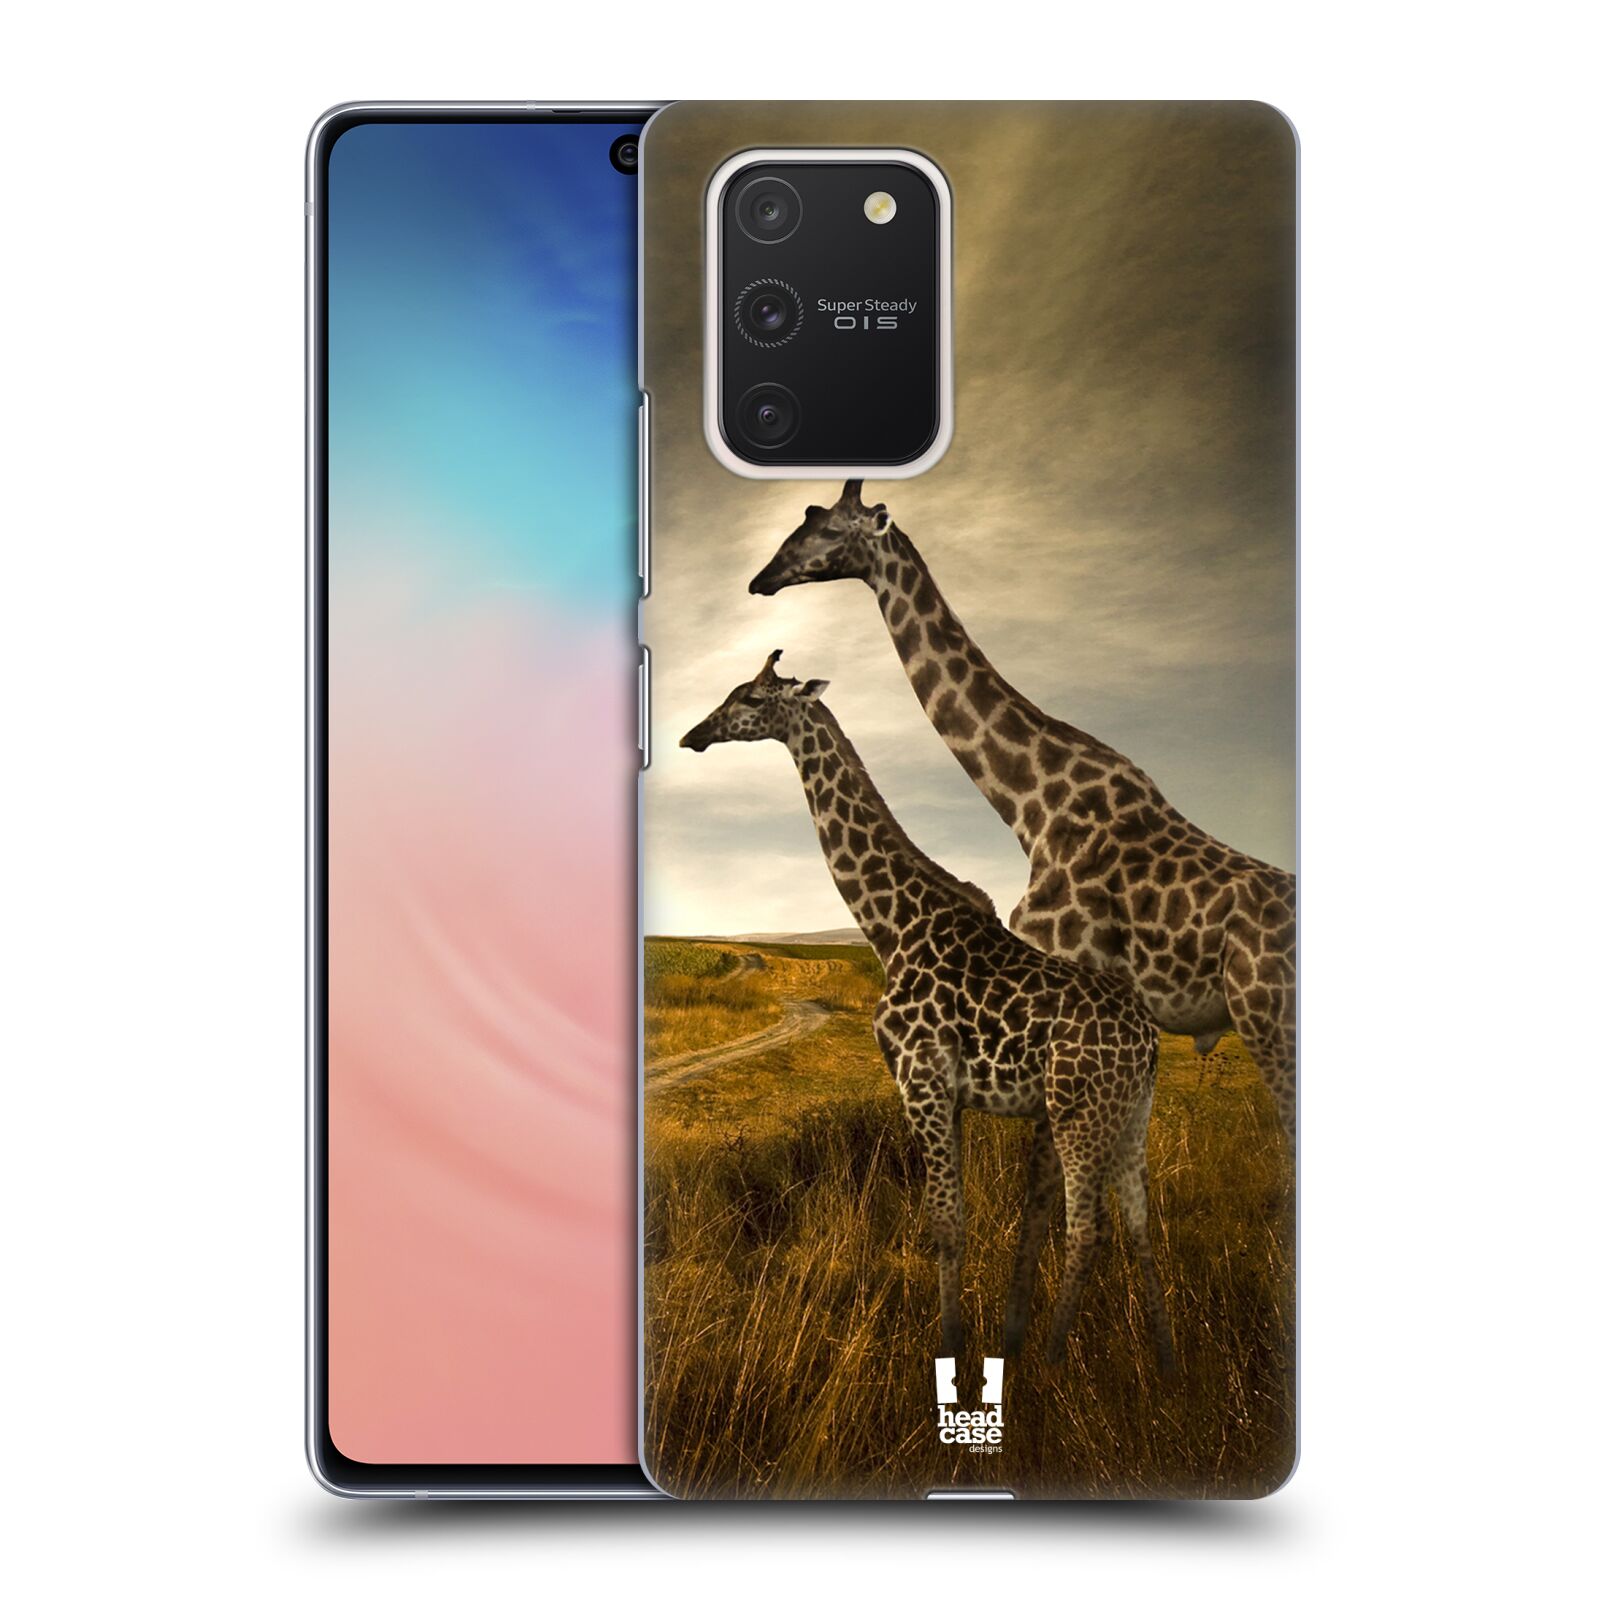 Zadní obal pro mobil Samsung Galaxy S10 LITE - HEAD CASE - Svět zvířat žirafy